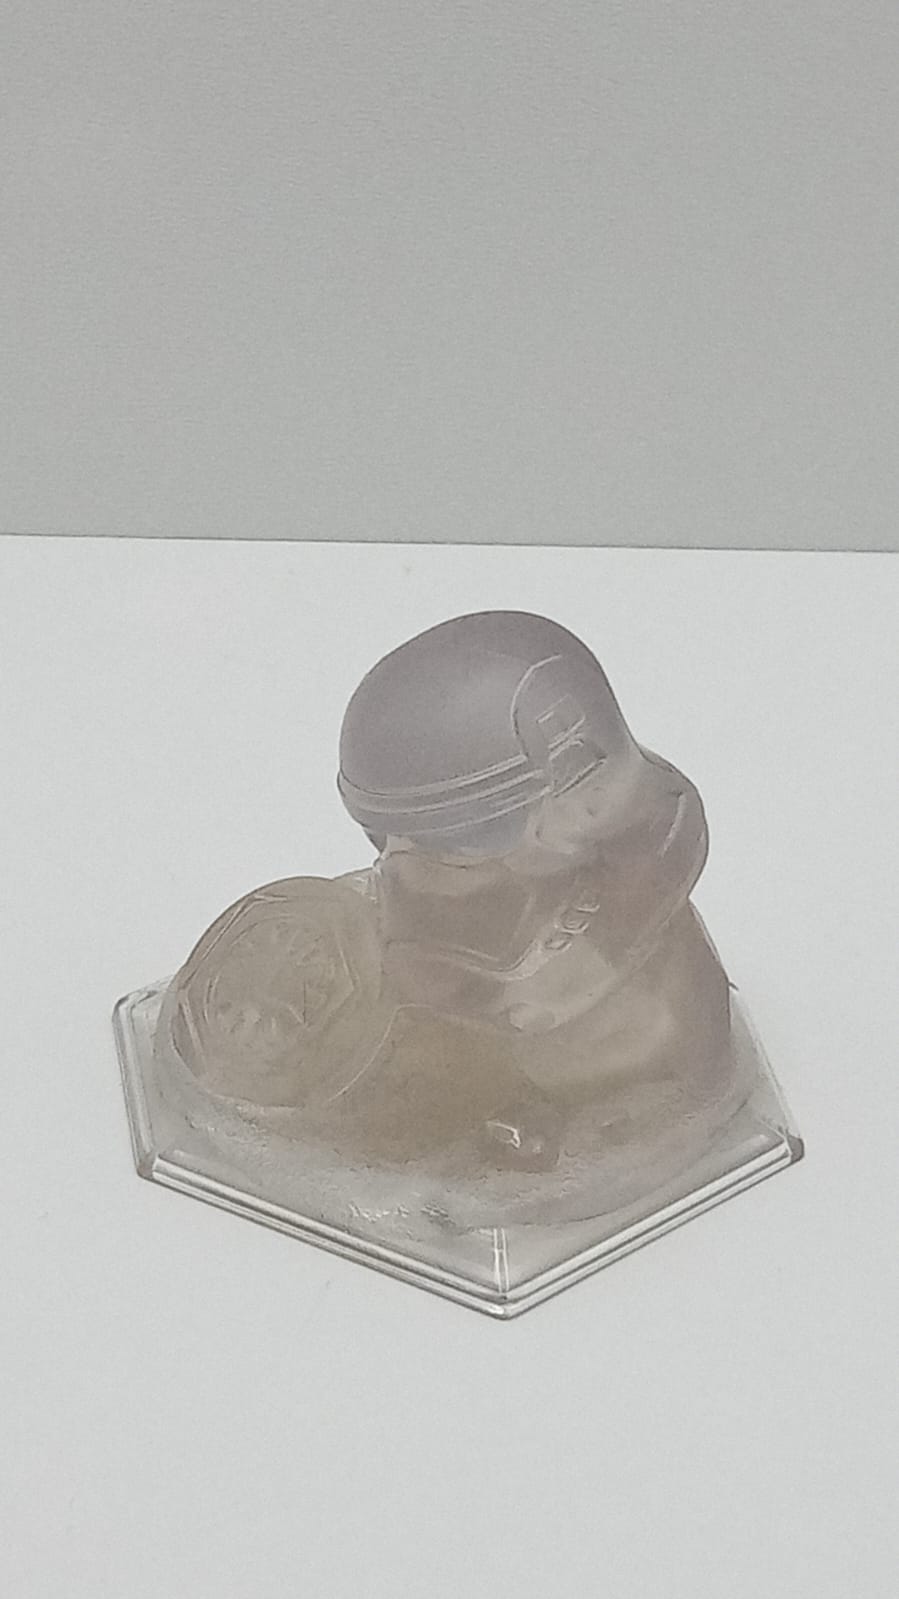 Disney Infinity Storm Trooper Helmet Crystal